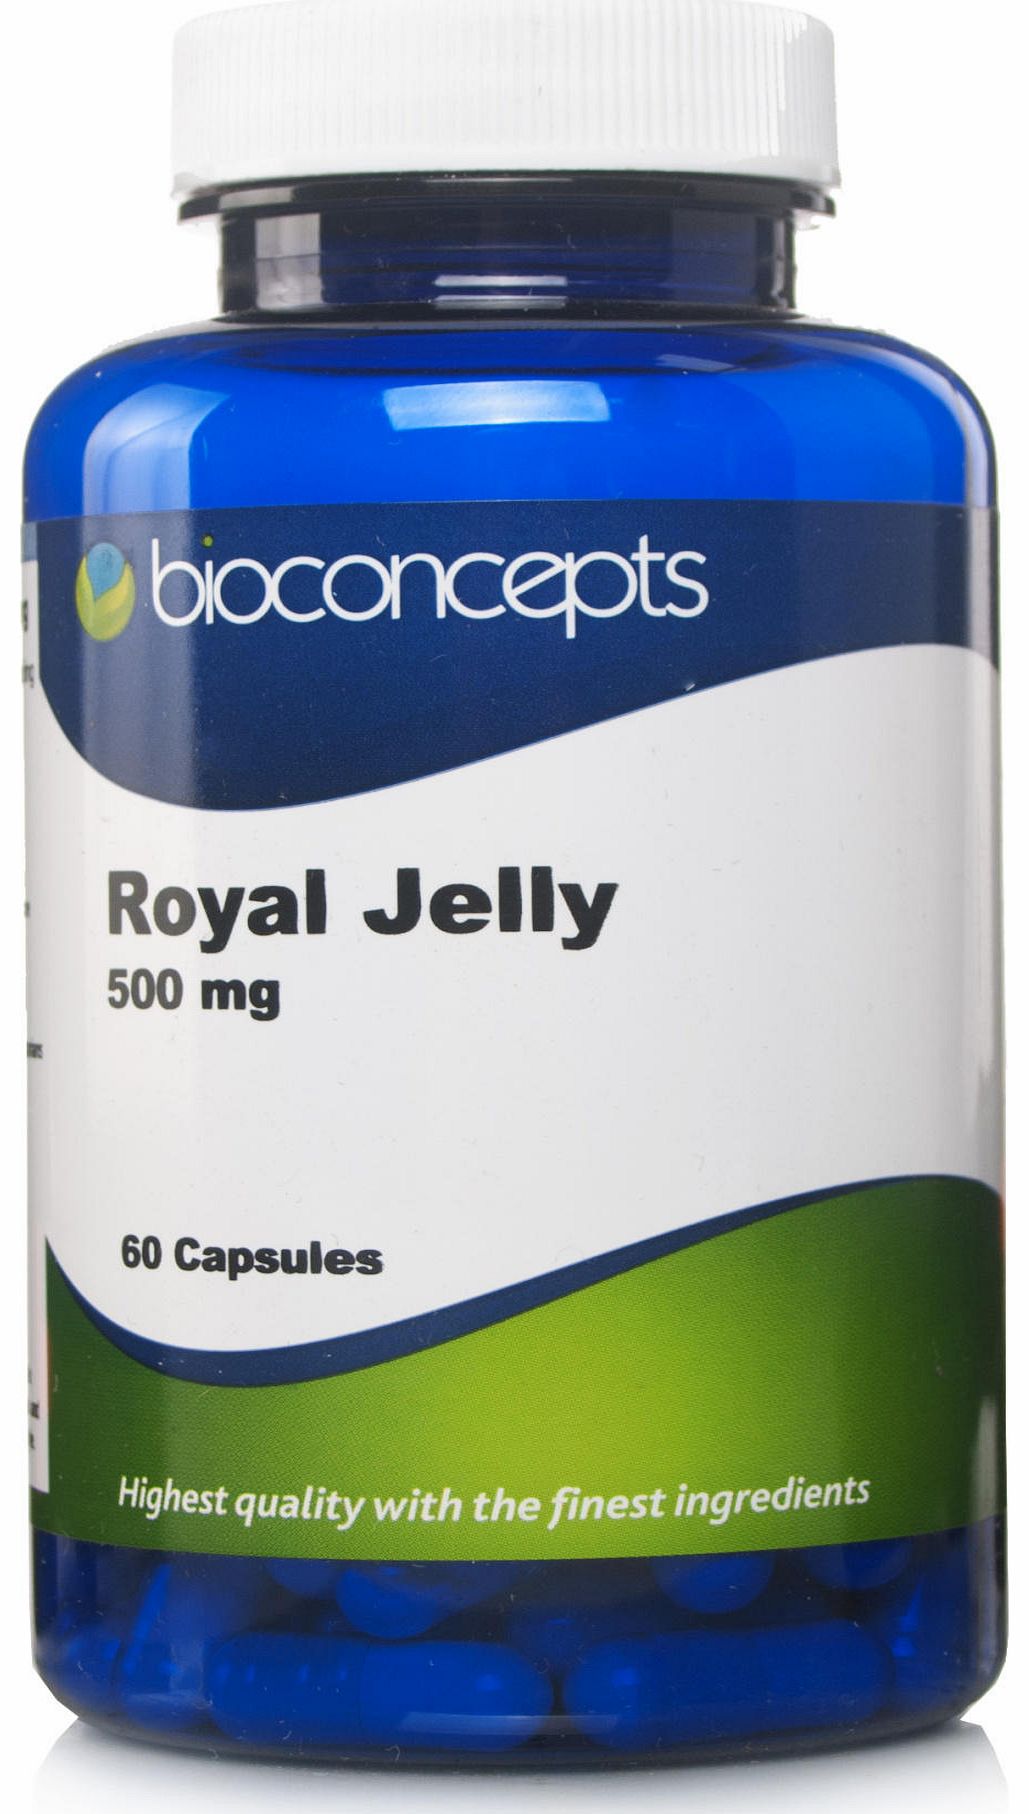 Bioconcepts Royal Jelly 500mg